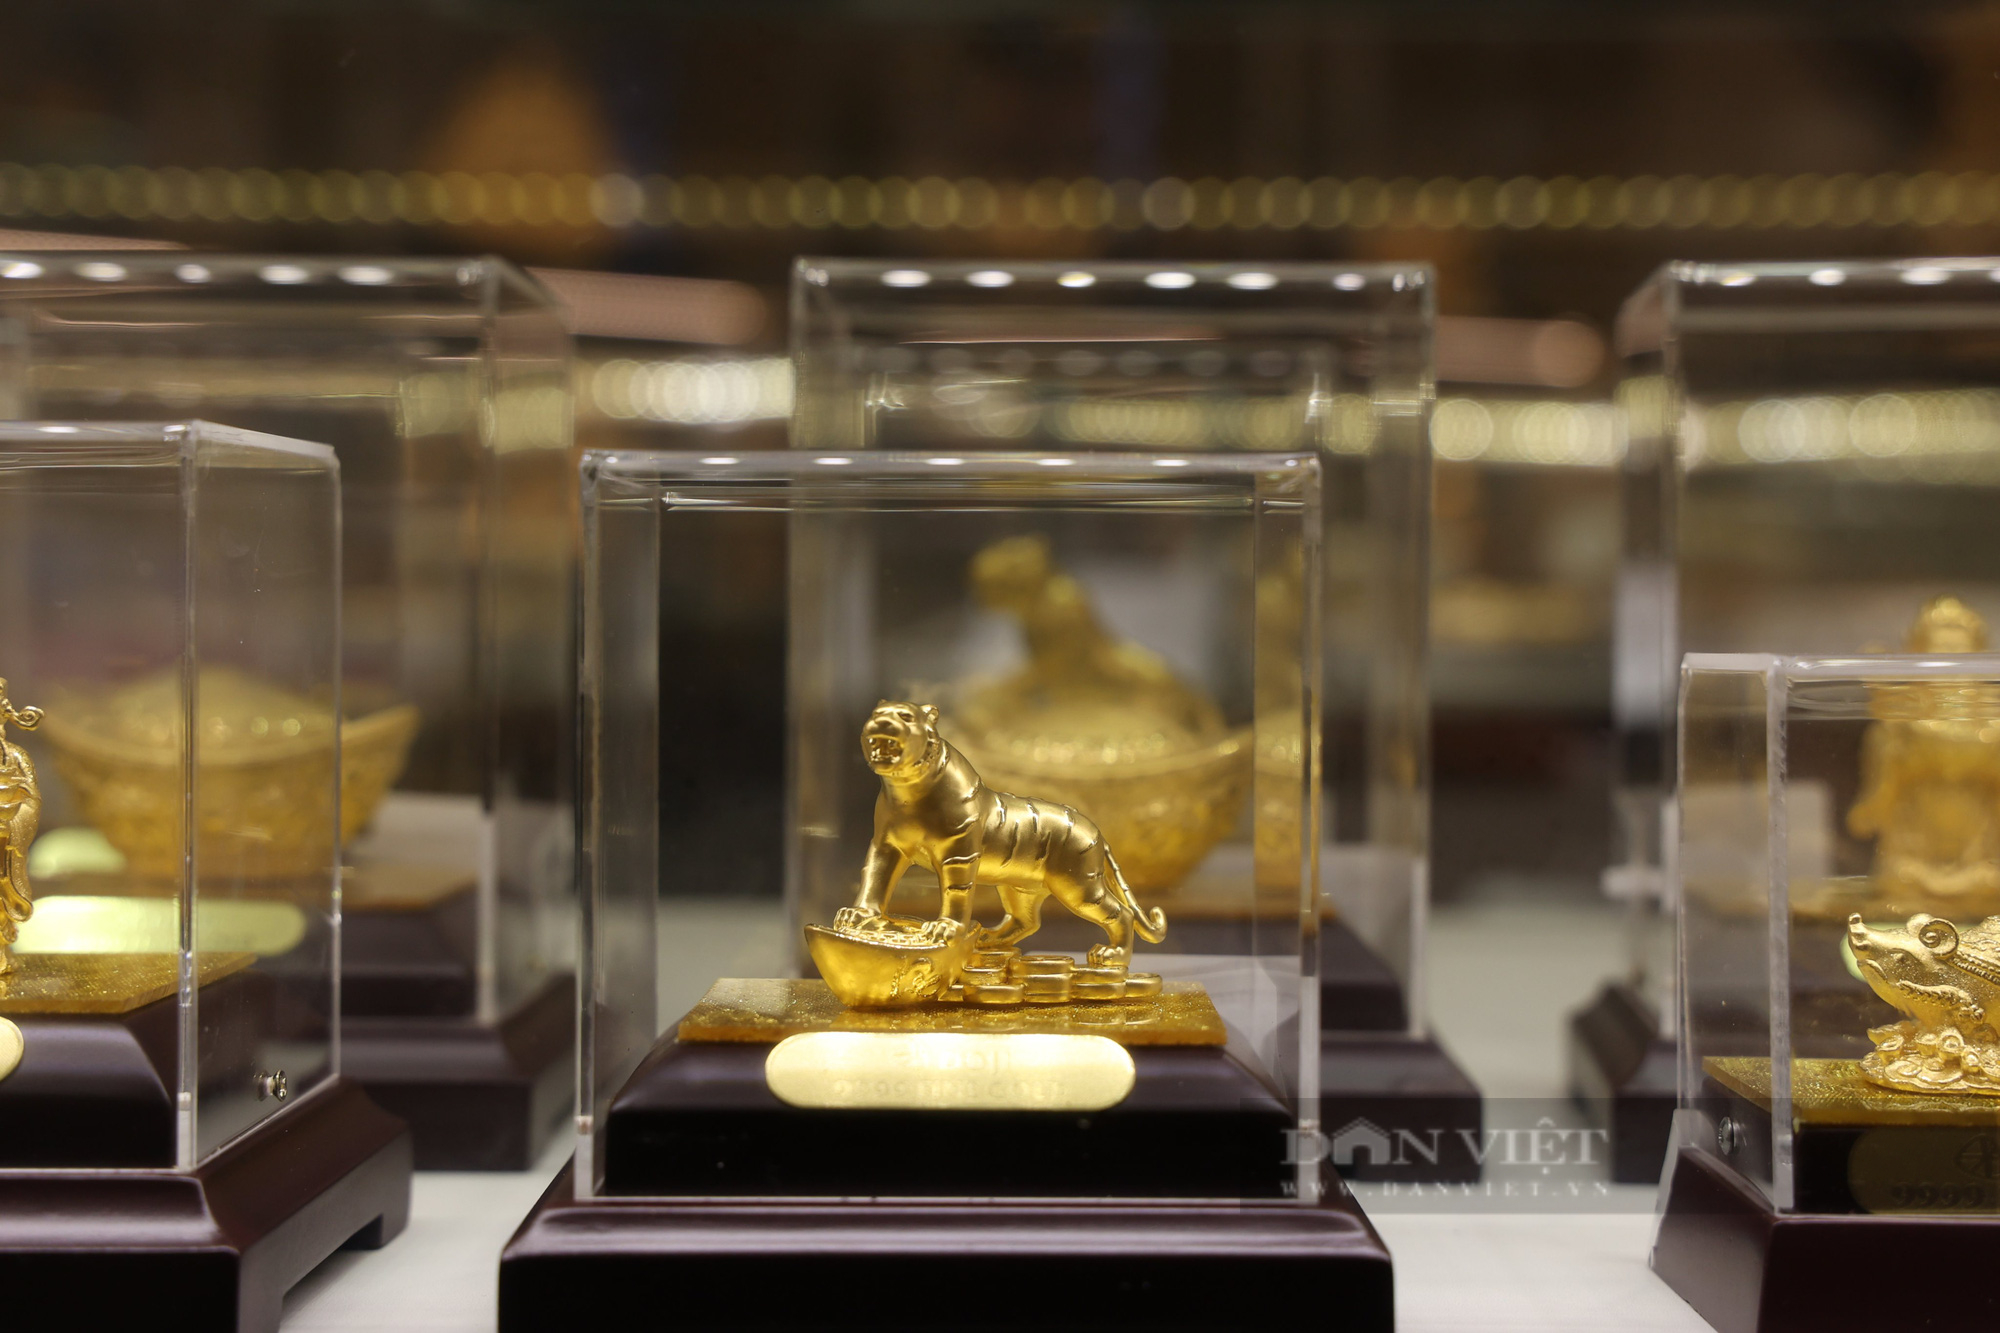 Hổ vàng nặng 46kg, giá gần 3 tỉ đồng trong ngày vía Thần tài - Ảnh 7.